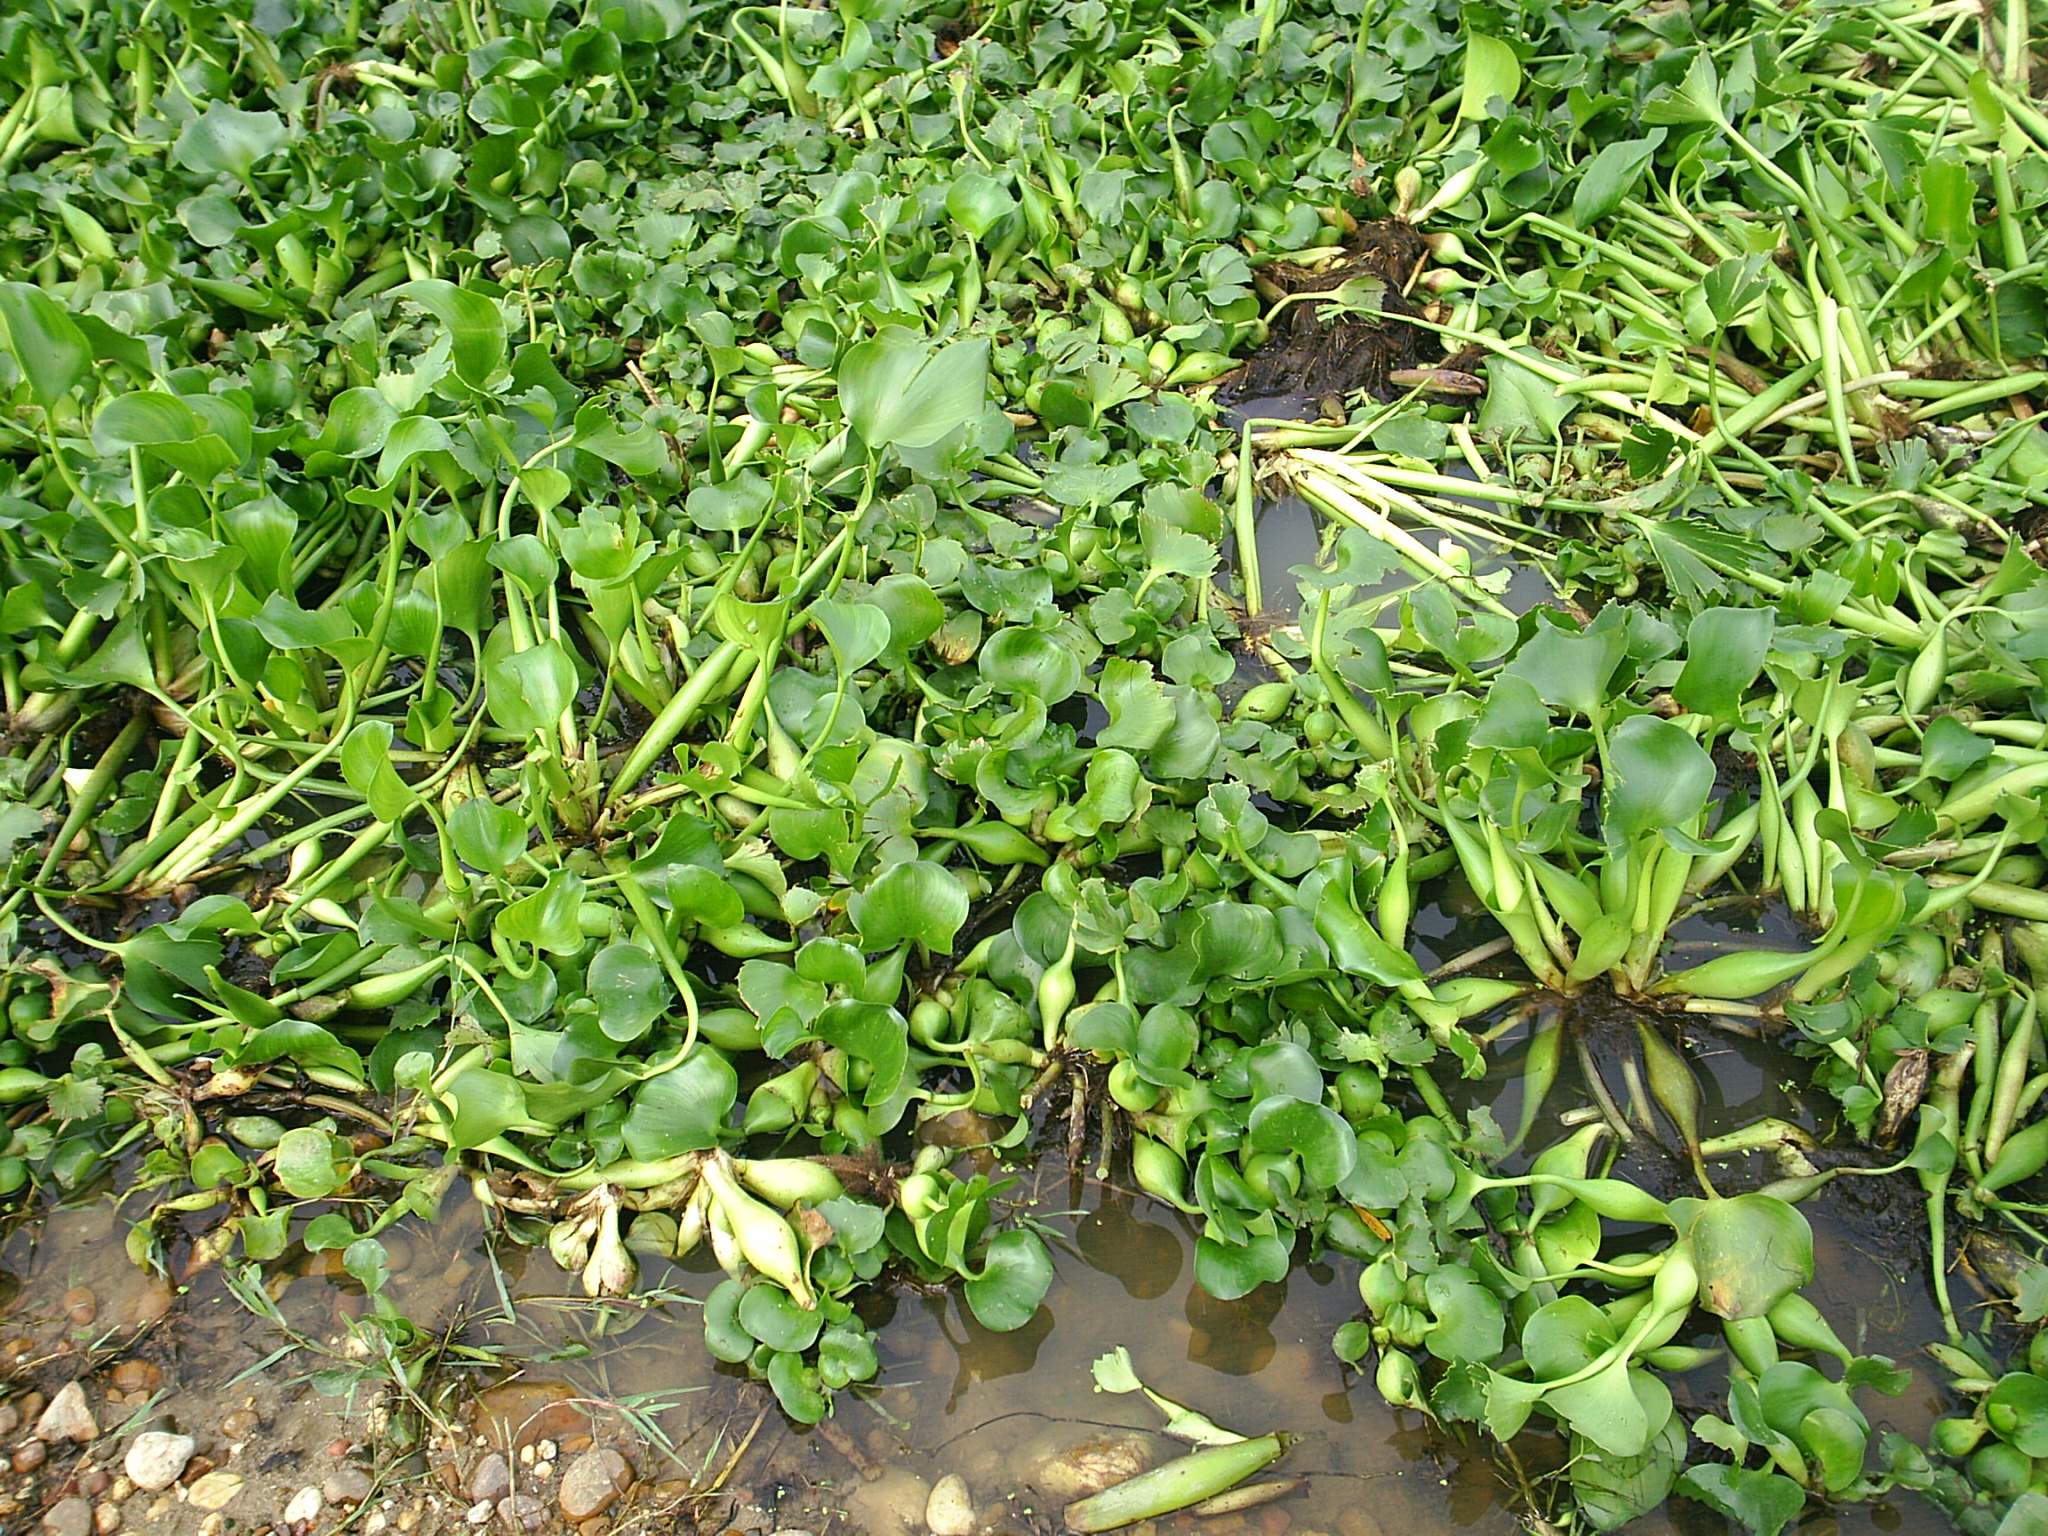 Detalle de una orilla del rio Guadiana cubierta por el jacinto de agua. A primera vista el jacinto presenta una similitud con la "Cala" ("alcatraz", "odo" u "oreja de poeta"): Fotografa. Francisco L. Morcillo, Nov.'05.